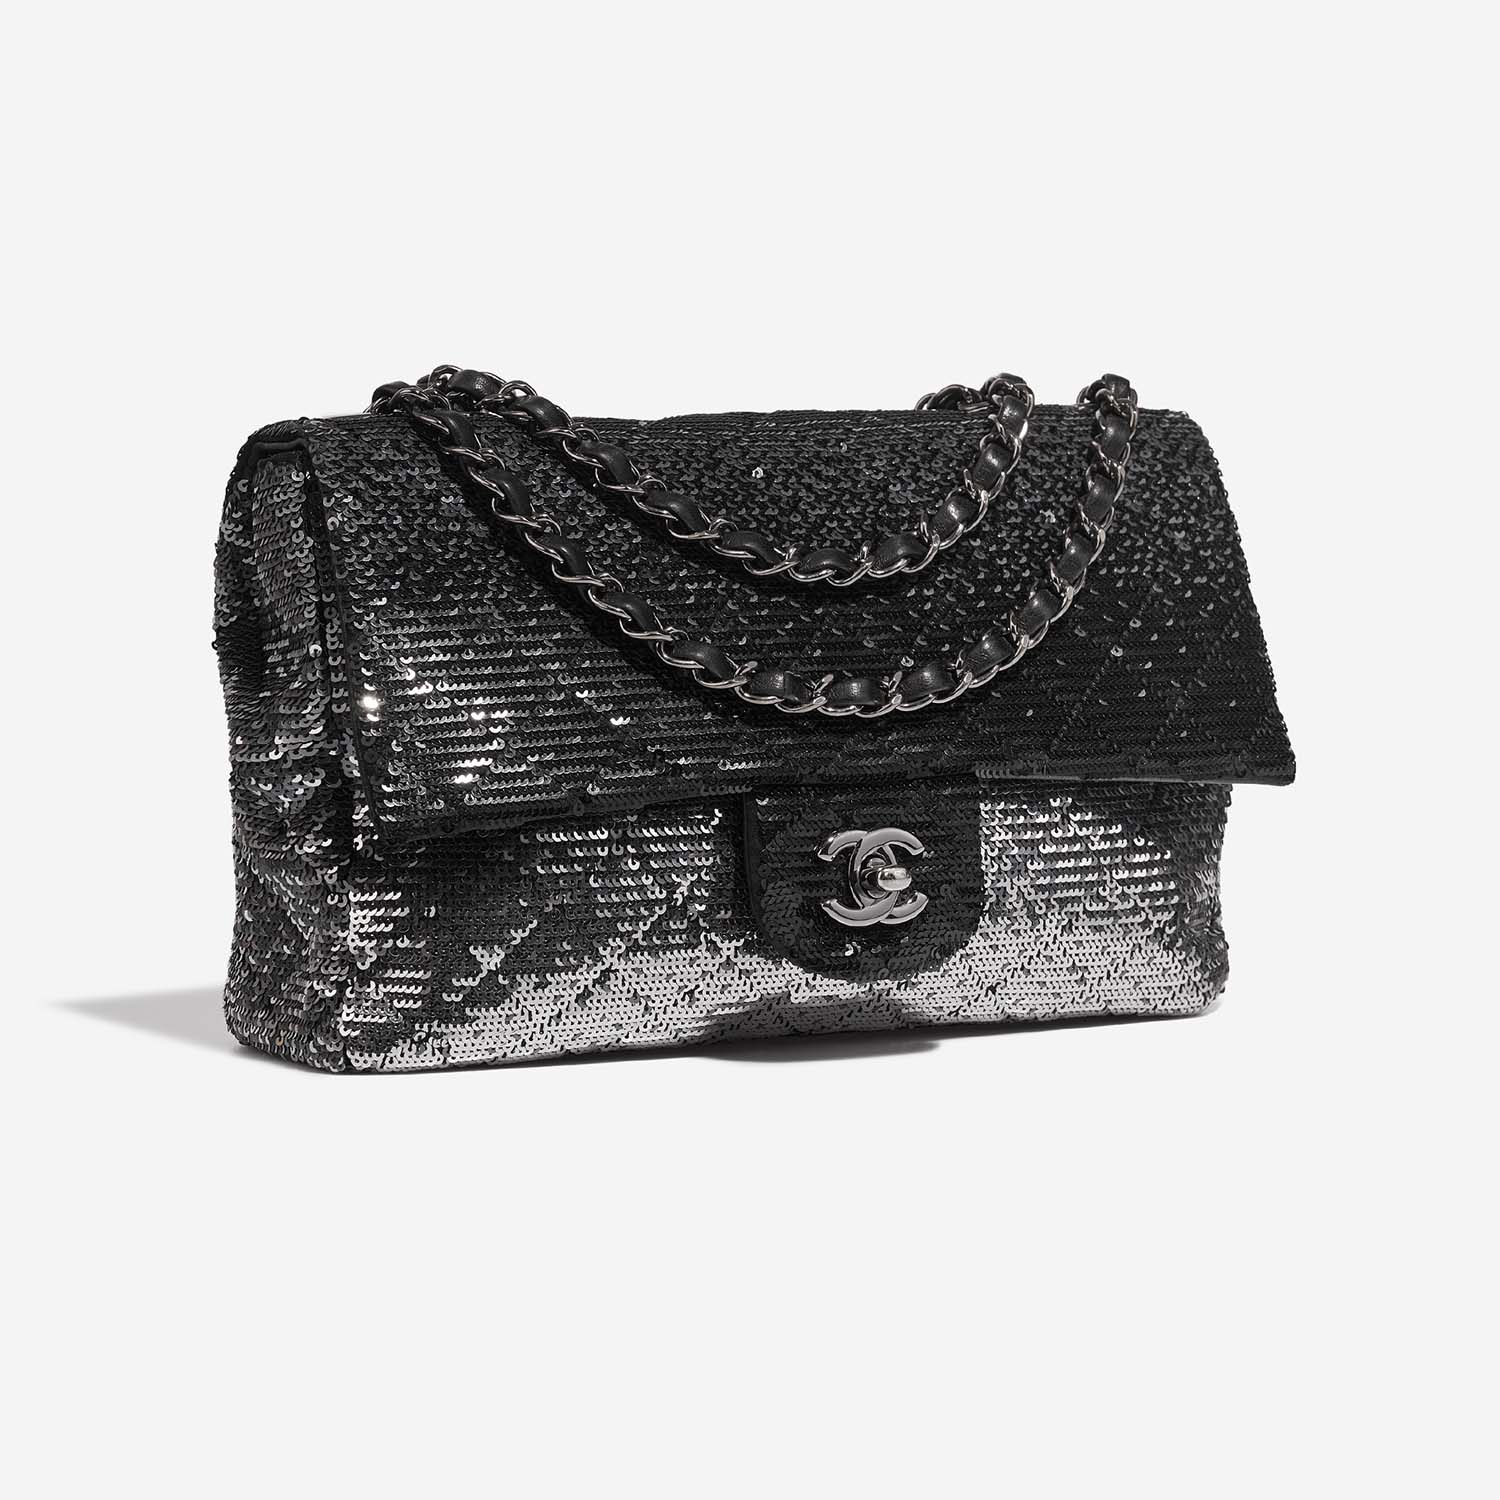 Chanel Timeless Medium Black-Silver Side Front | Verkaufen Sie Ihre Designer-Tasche auf Saclab.com